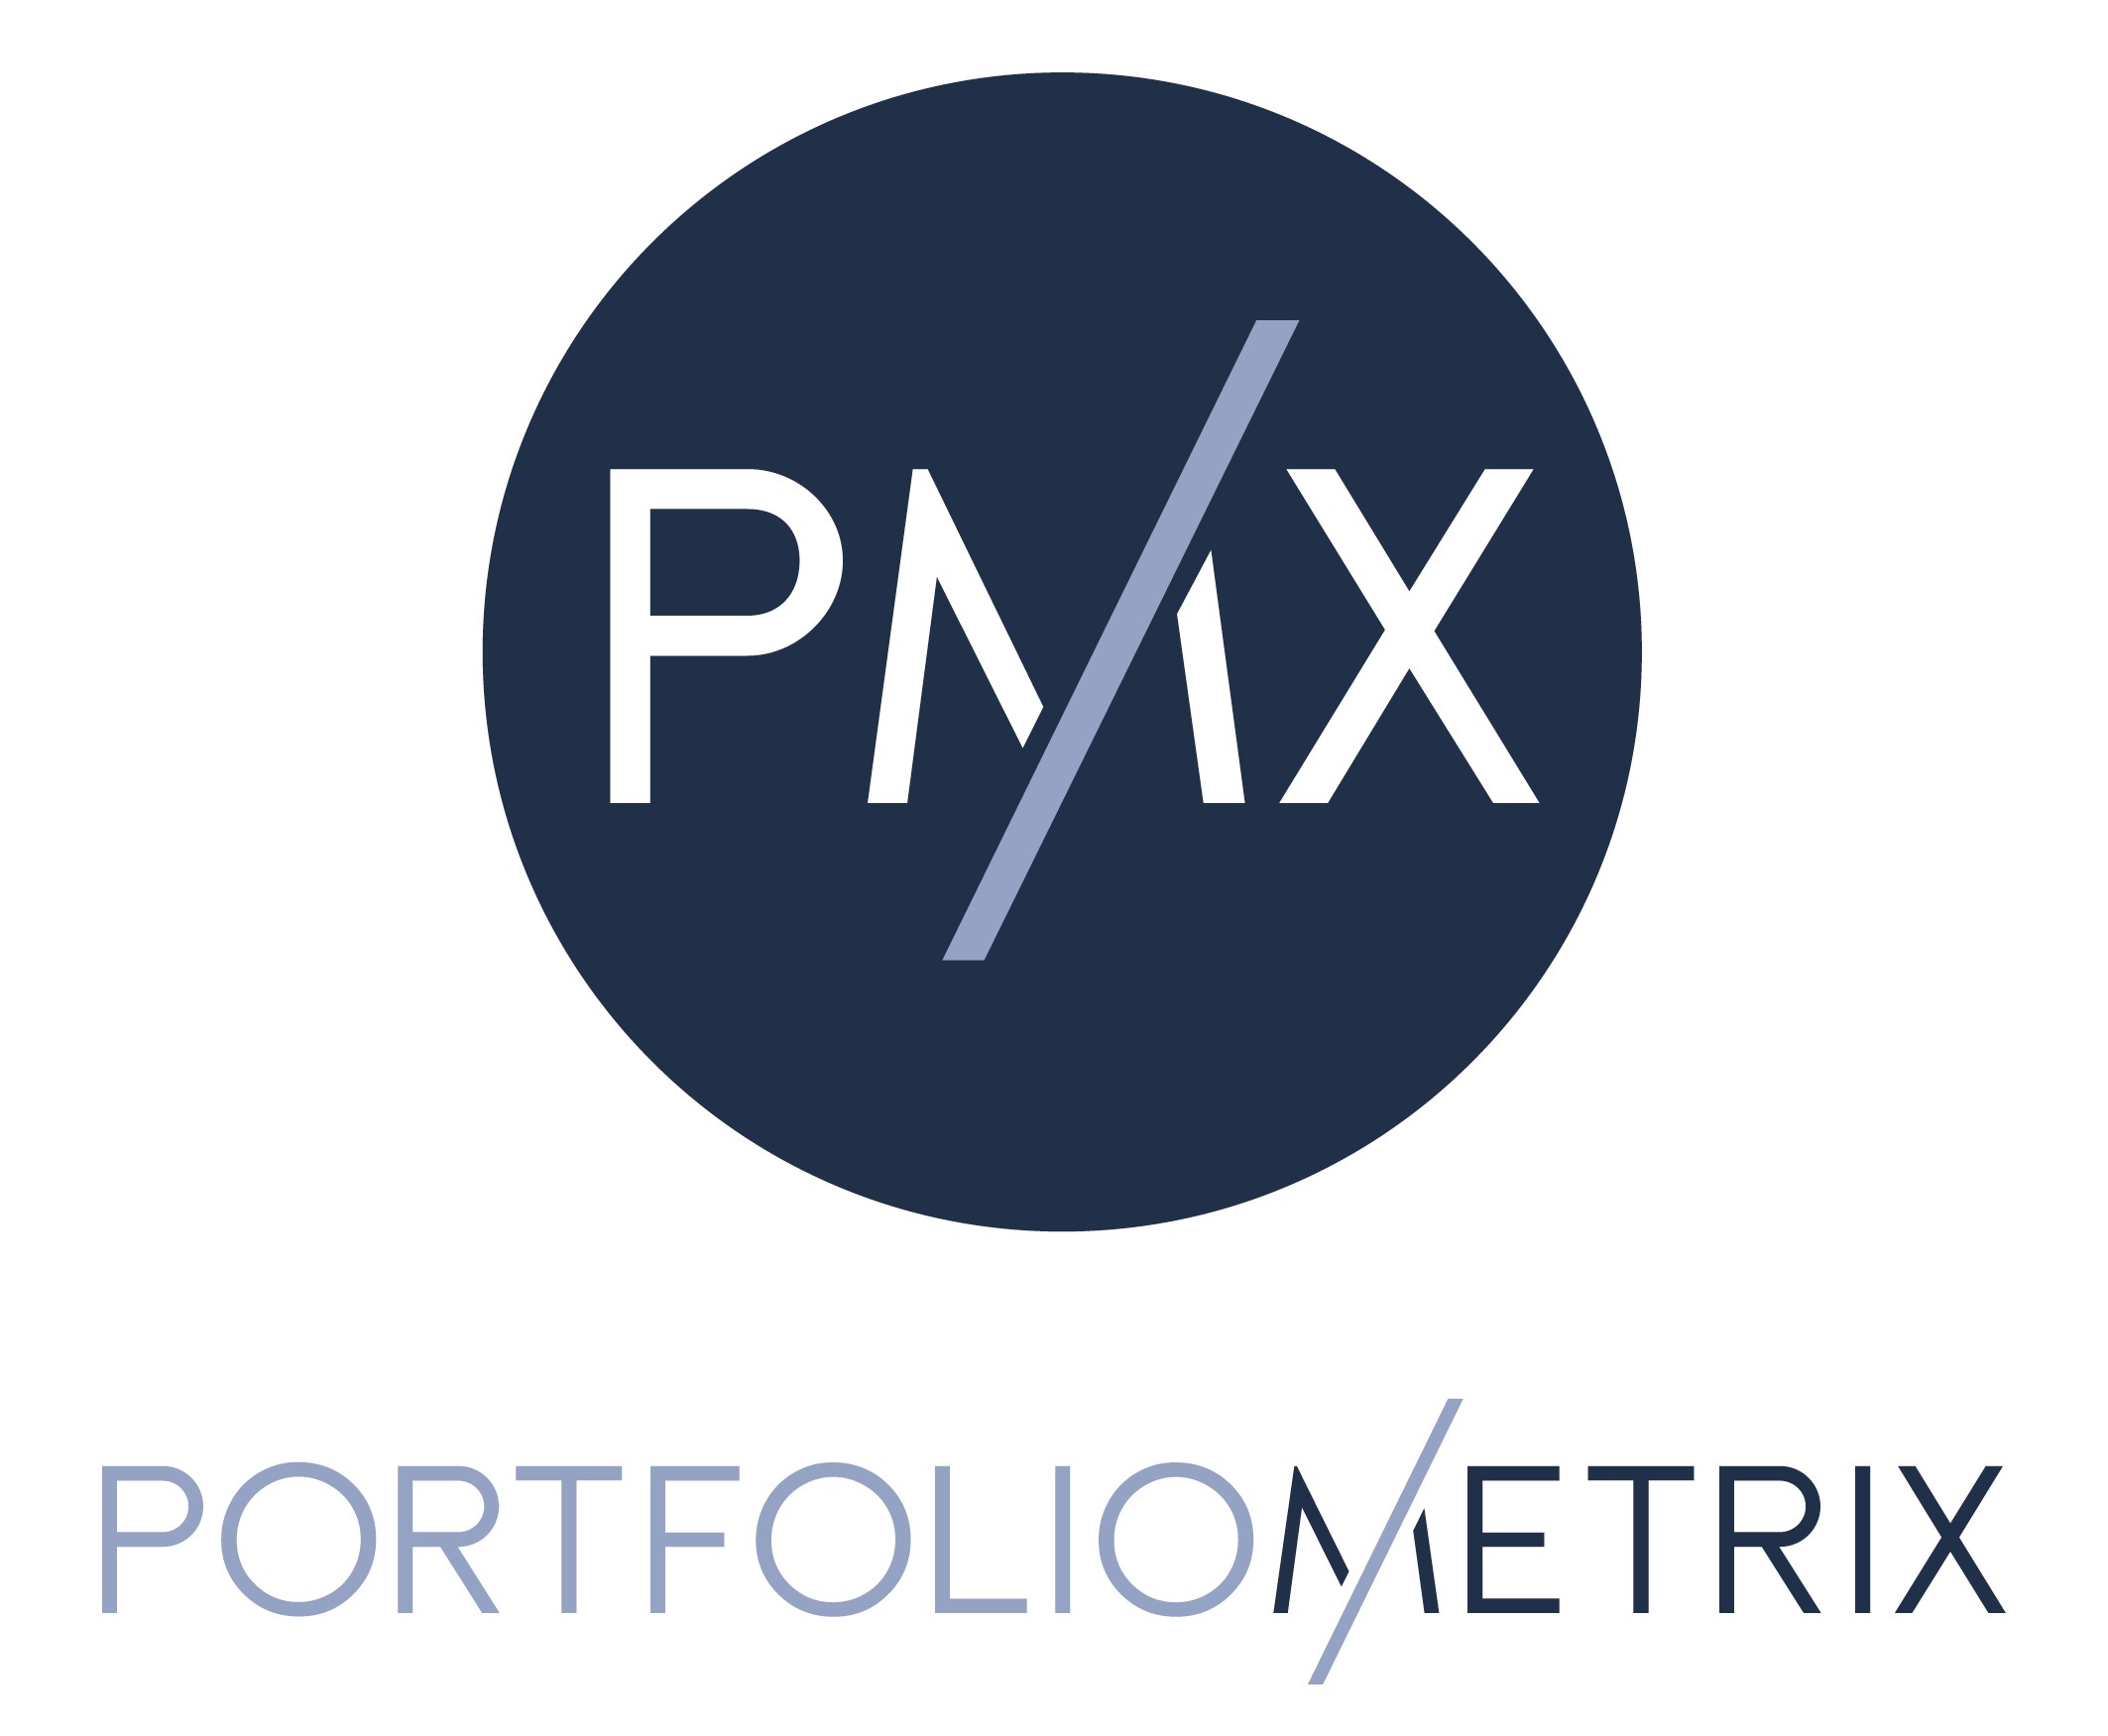 Portfolio Metrix